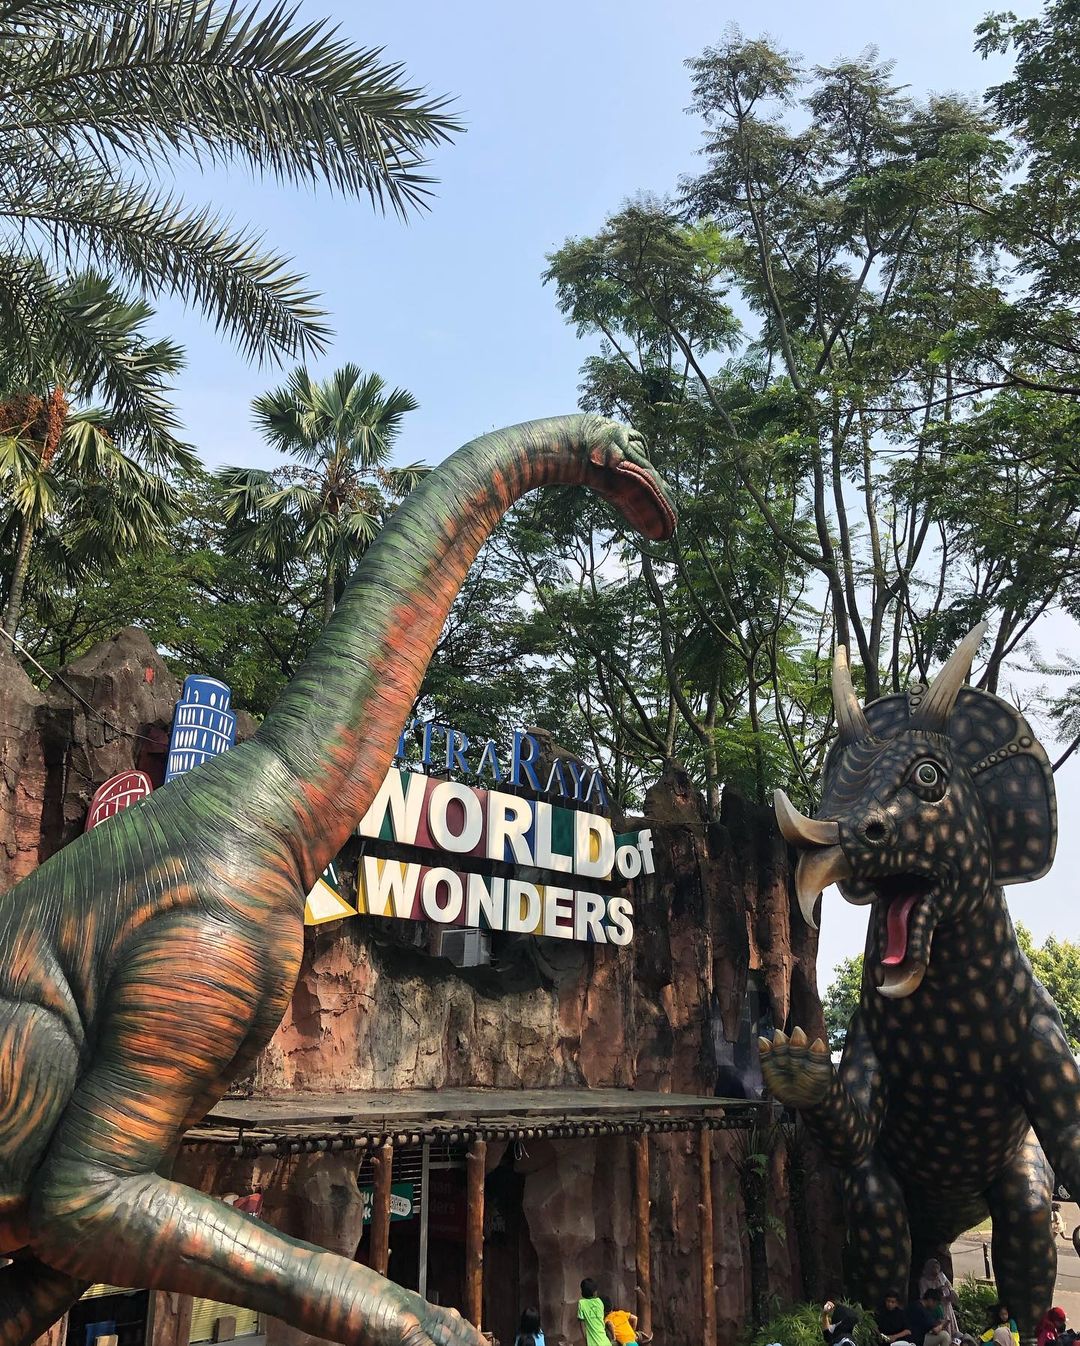 World of Wonder Citra Raya, Wisata Tangerang dengan Harga Terjangkau untuk Bermain Bareng Keluarga